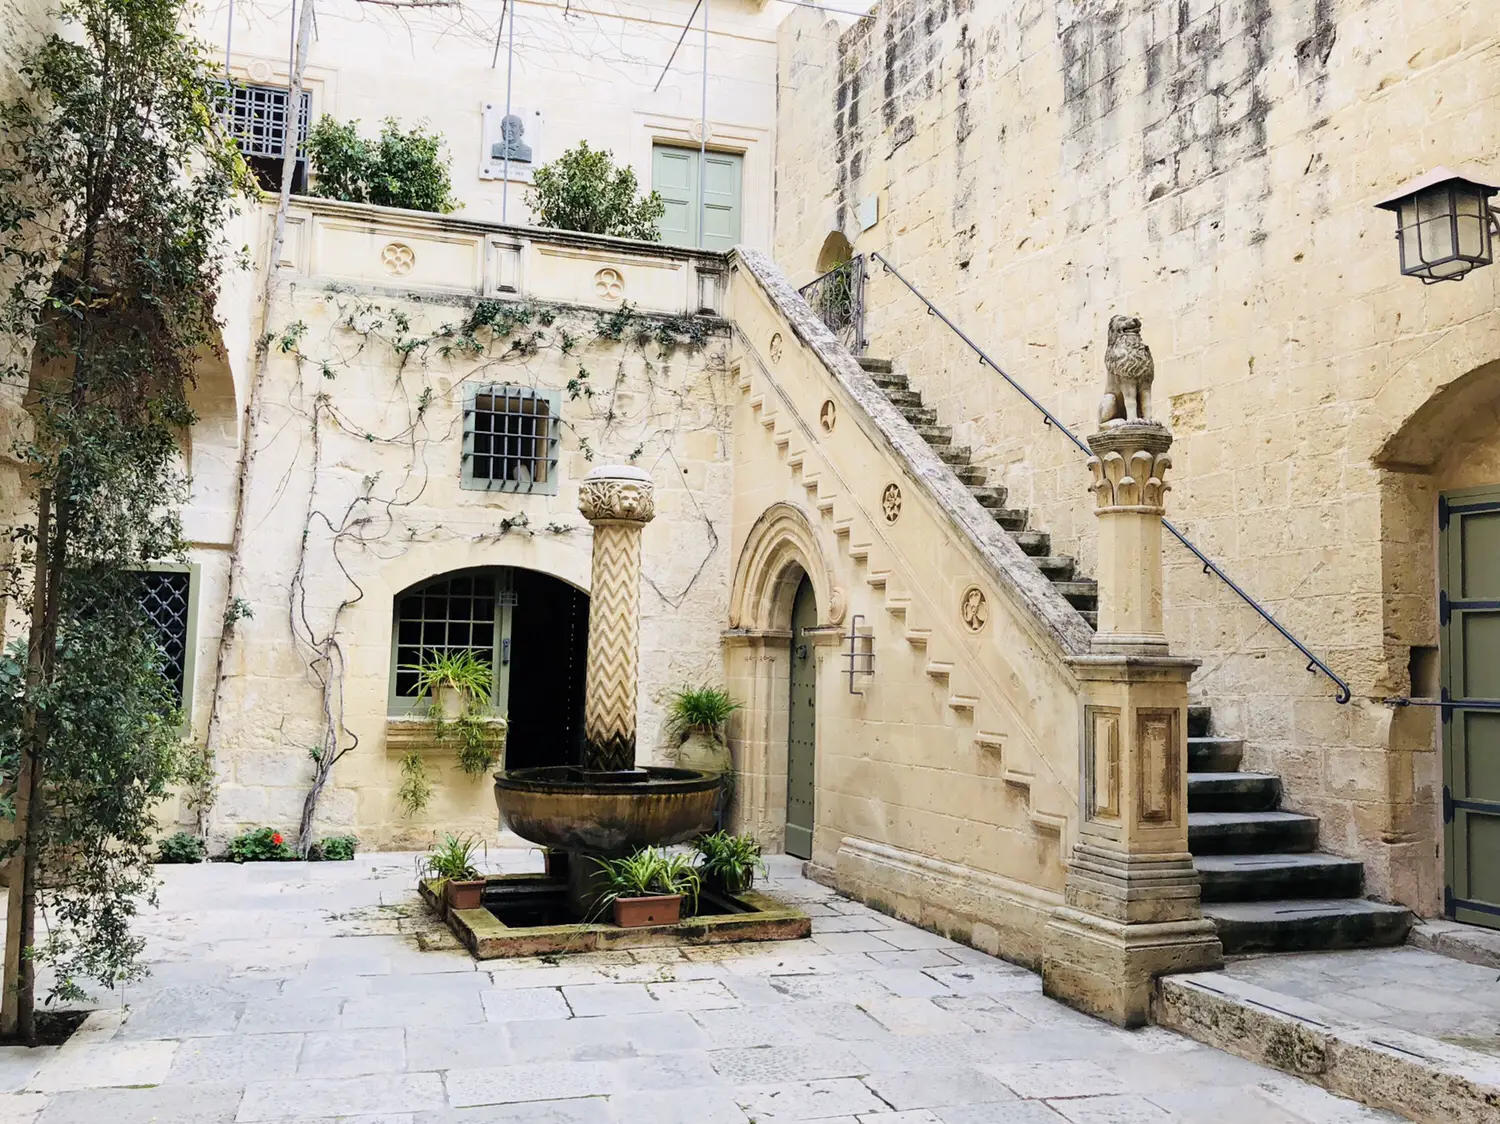 Sehenswürdigkeiten in Mdina | The silent City | Malta mit Kind und Baby | Urlaub | Familie | www.anomadabroad.com | Palazzo Falson